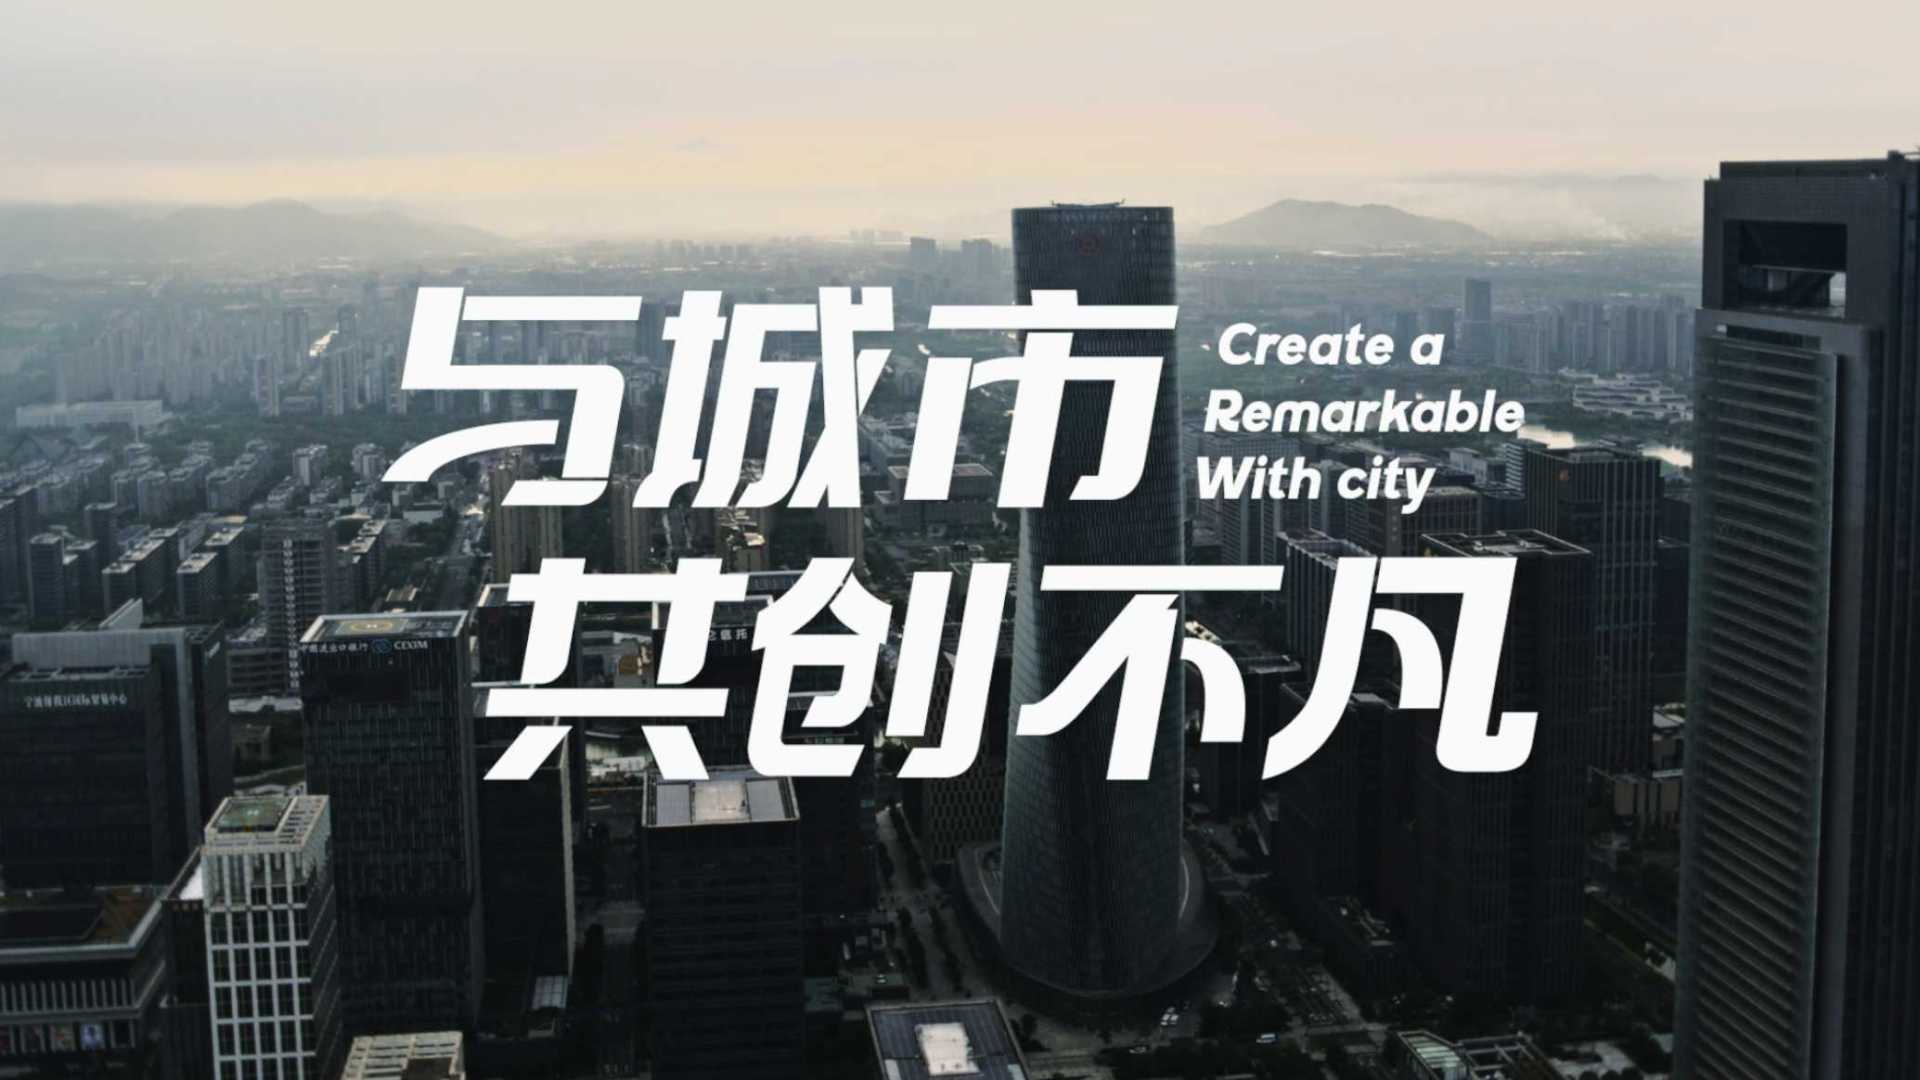 宁波东投集团宣传片《与城市共创不凡》